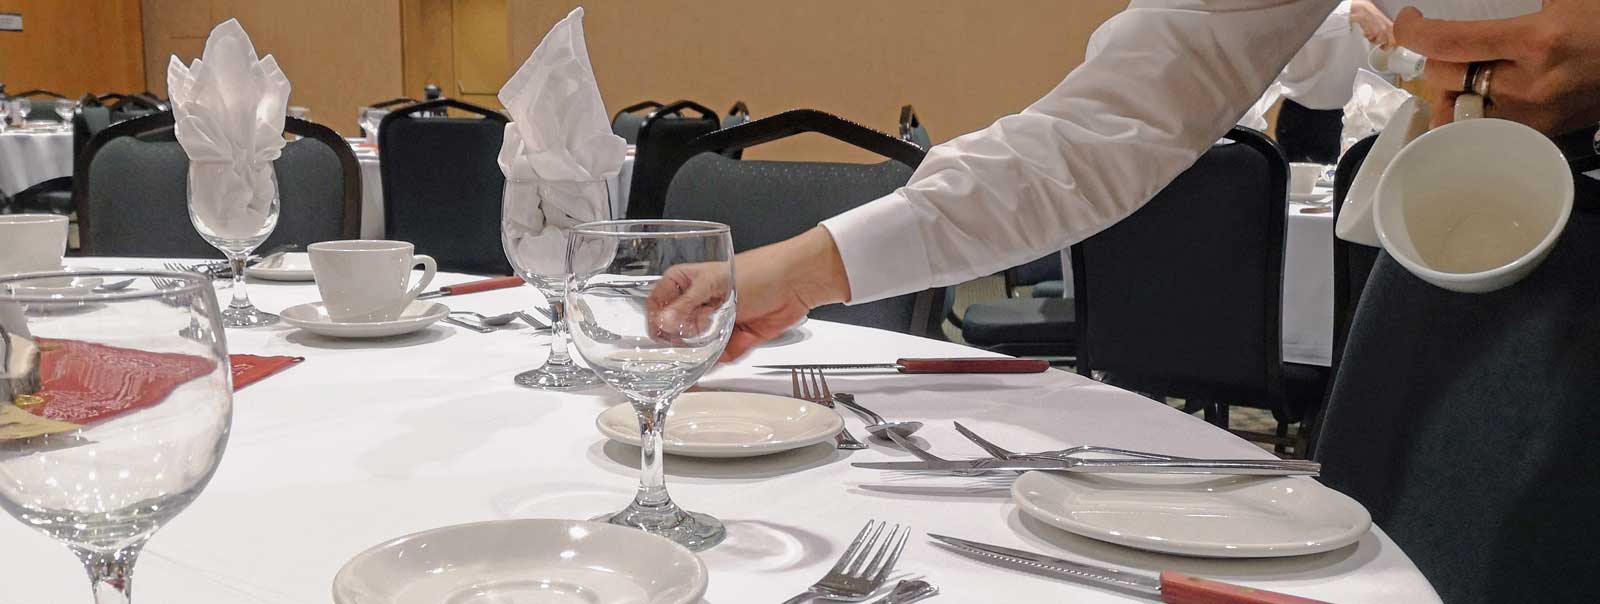 Employé dressant une table de banquet